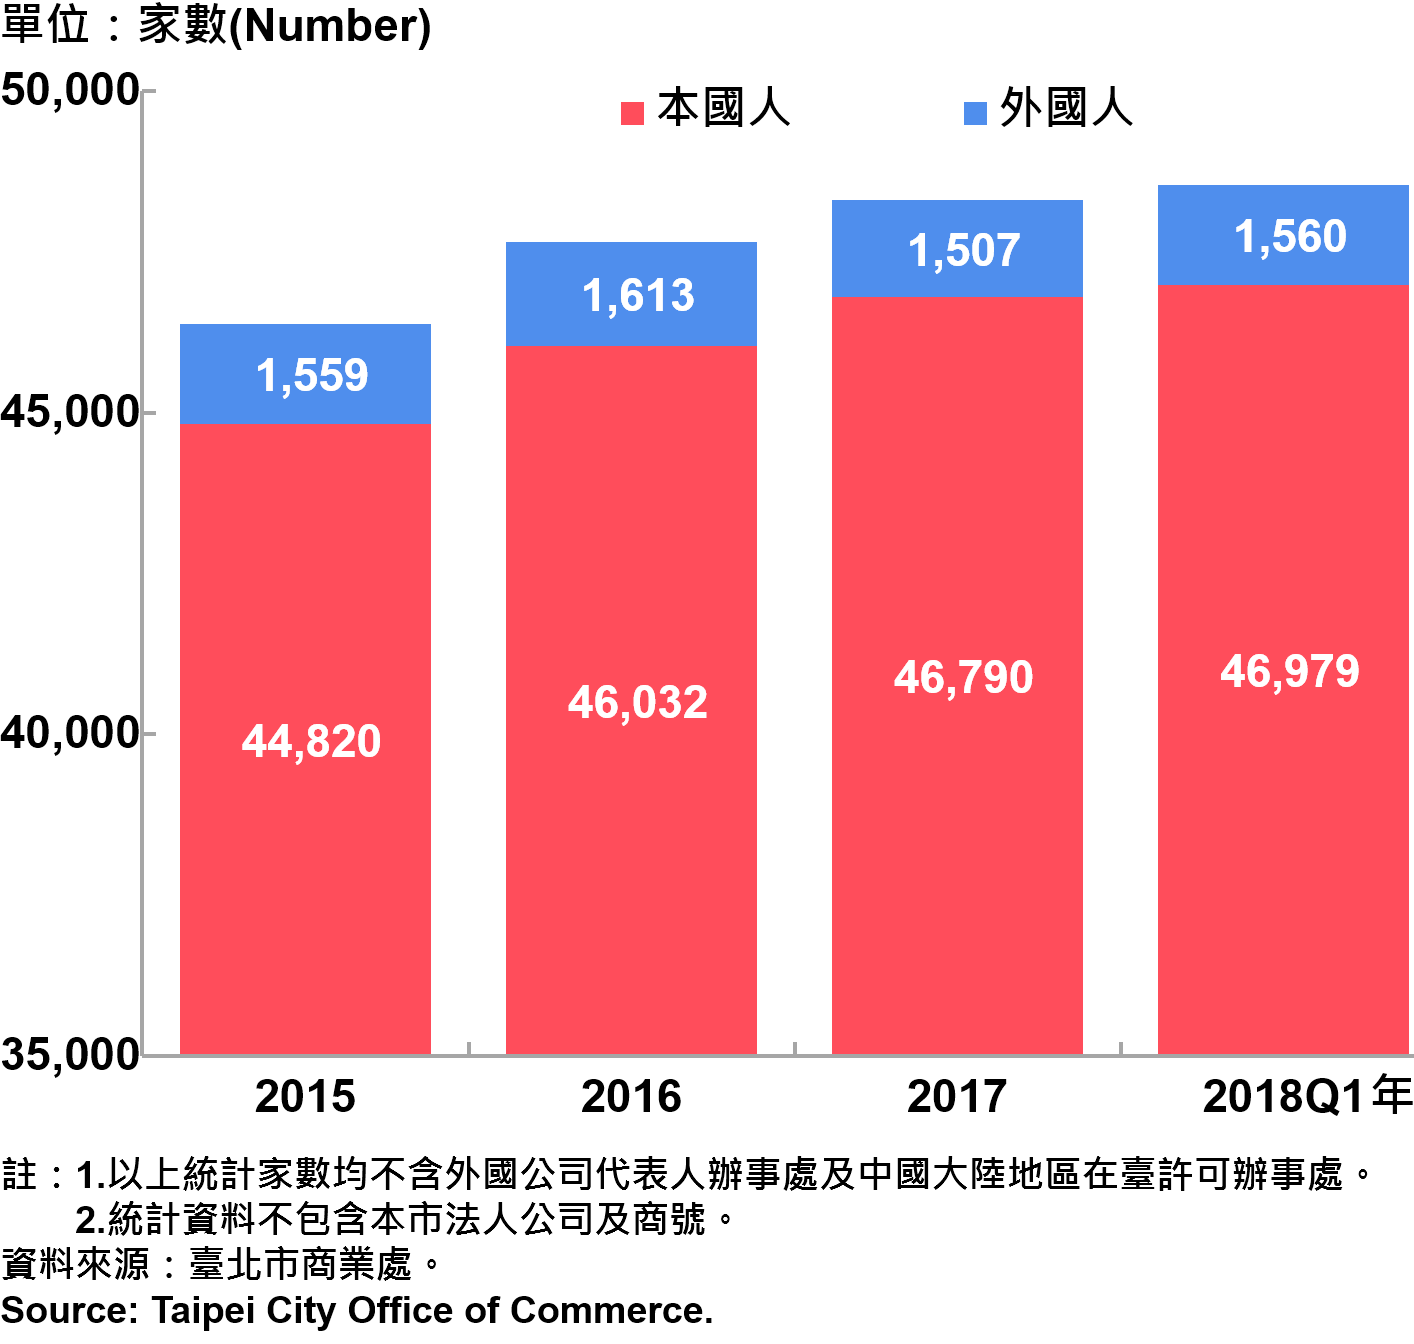 臺北市新創公司青創負責人為本國人與外國人分布情形—依現存家數—2018Q1 Responsible Person of Newly Registered Companies In Taipei City by Nationality - Number of Current —2018Q1